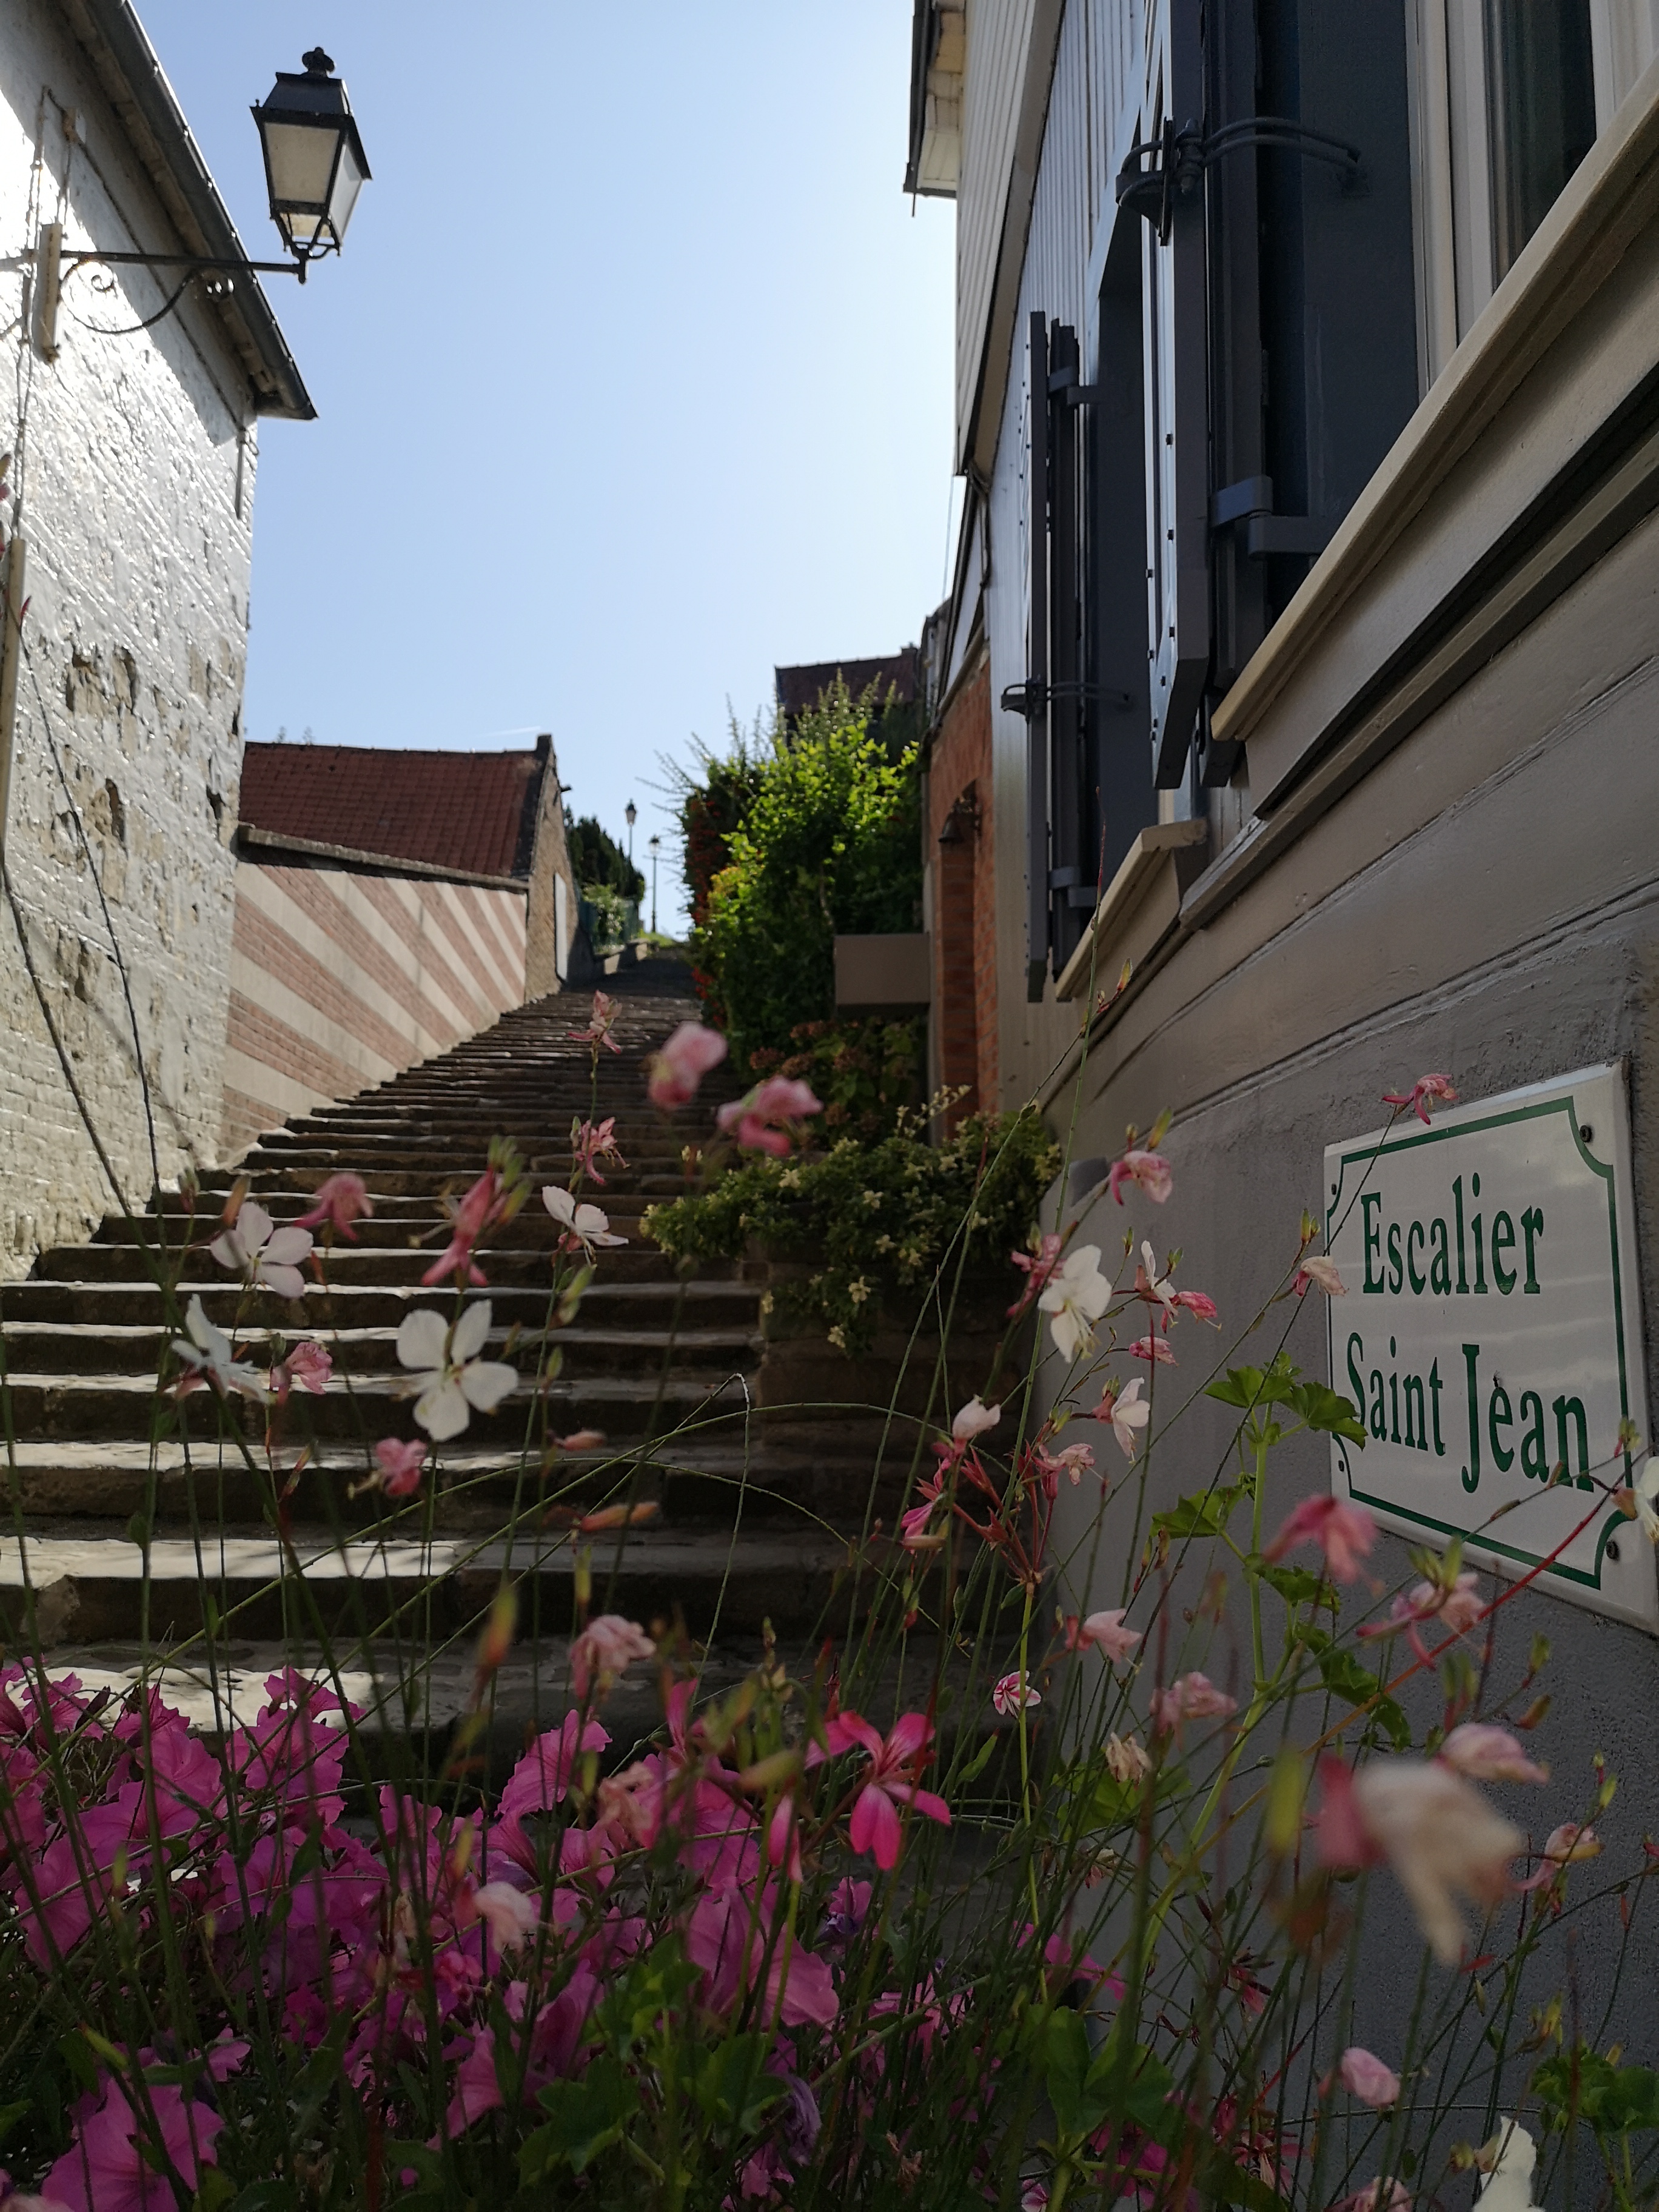 Escalier Saint-Jean - OTNS